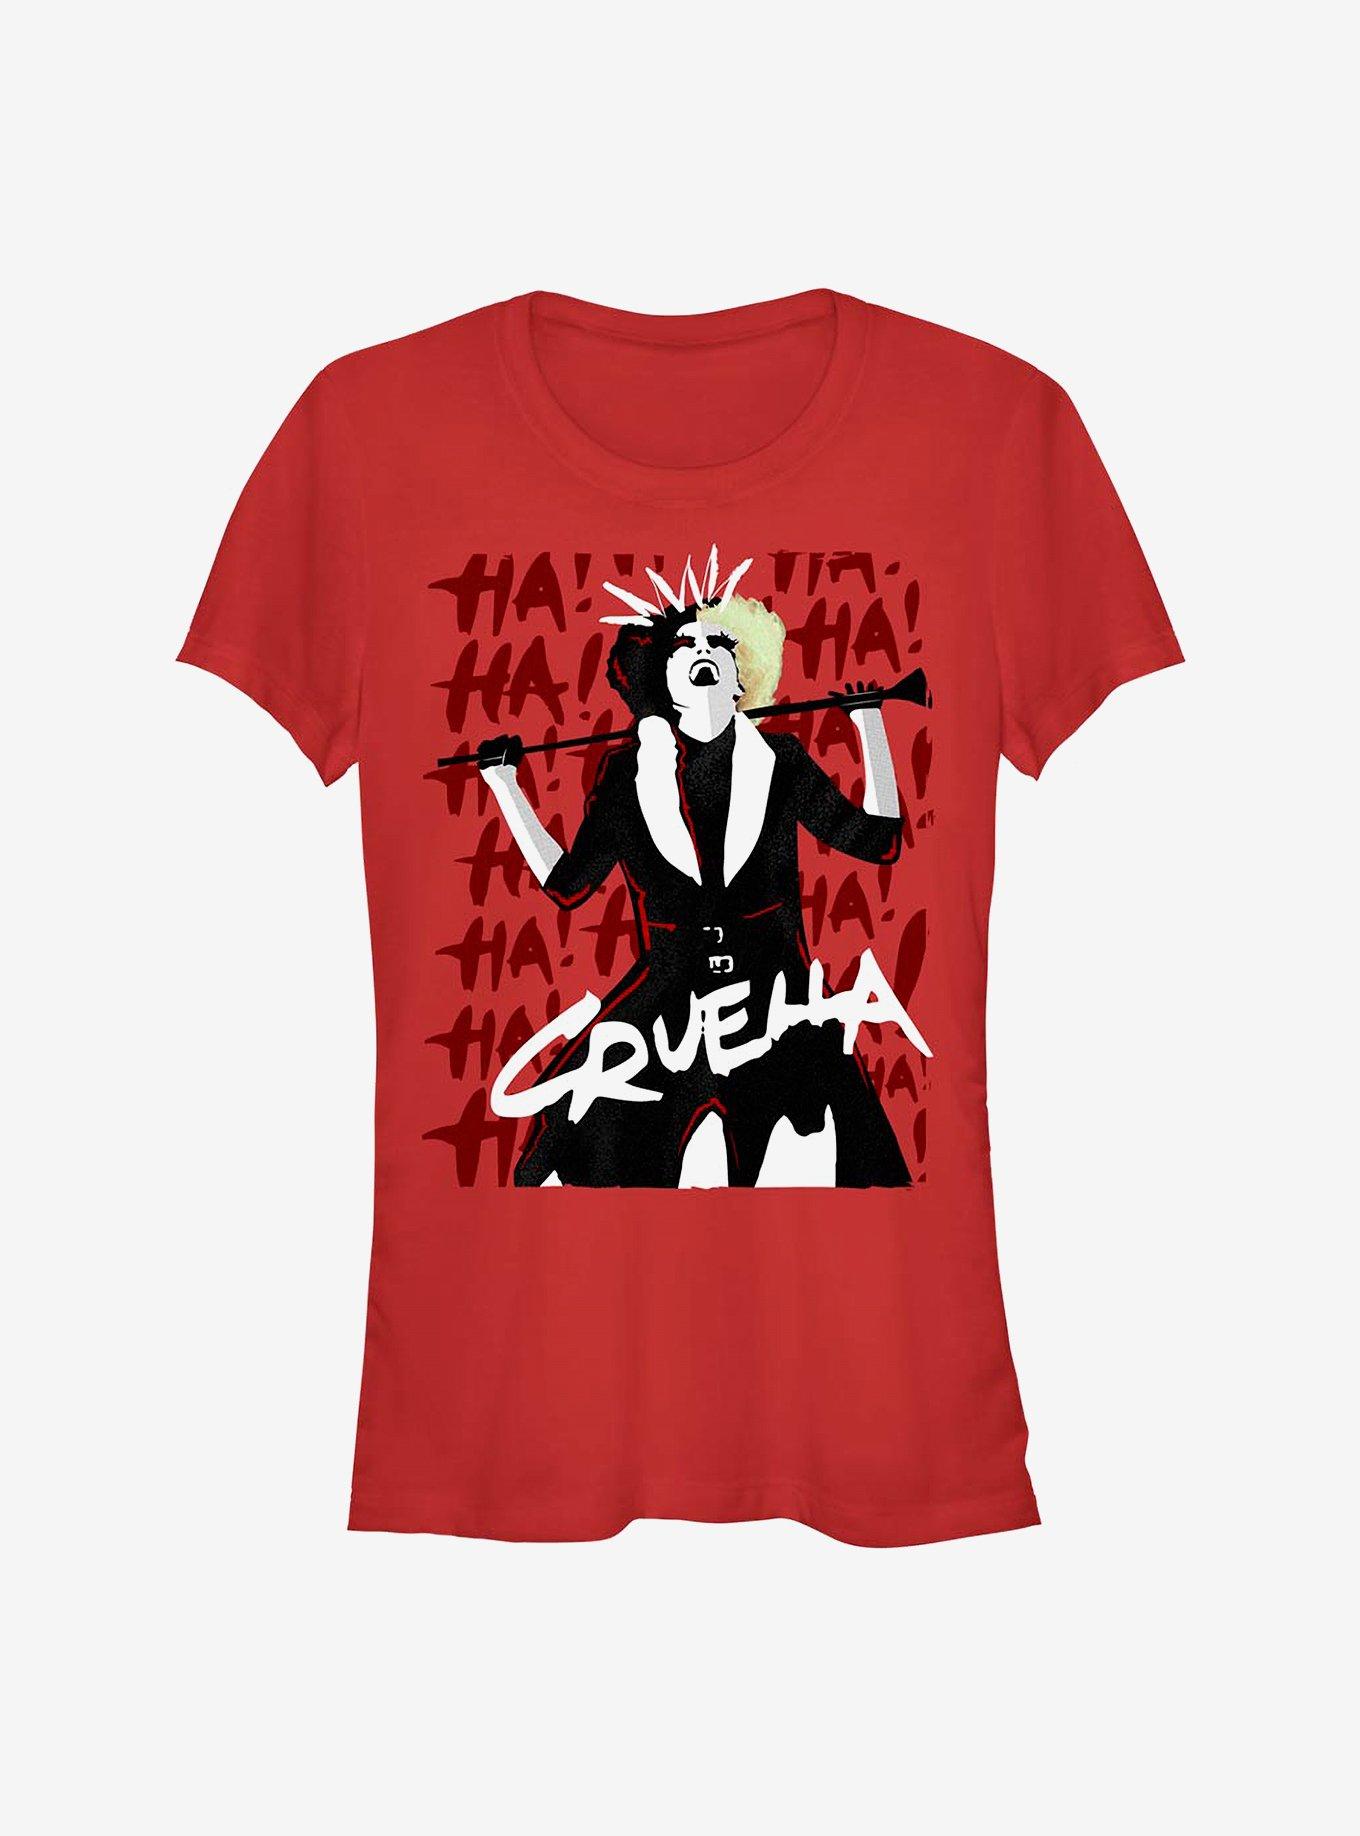 Disney Cruella Cruel Laughter Girls T-Shirt Hot Topic Exclusive, RED, hi-res